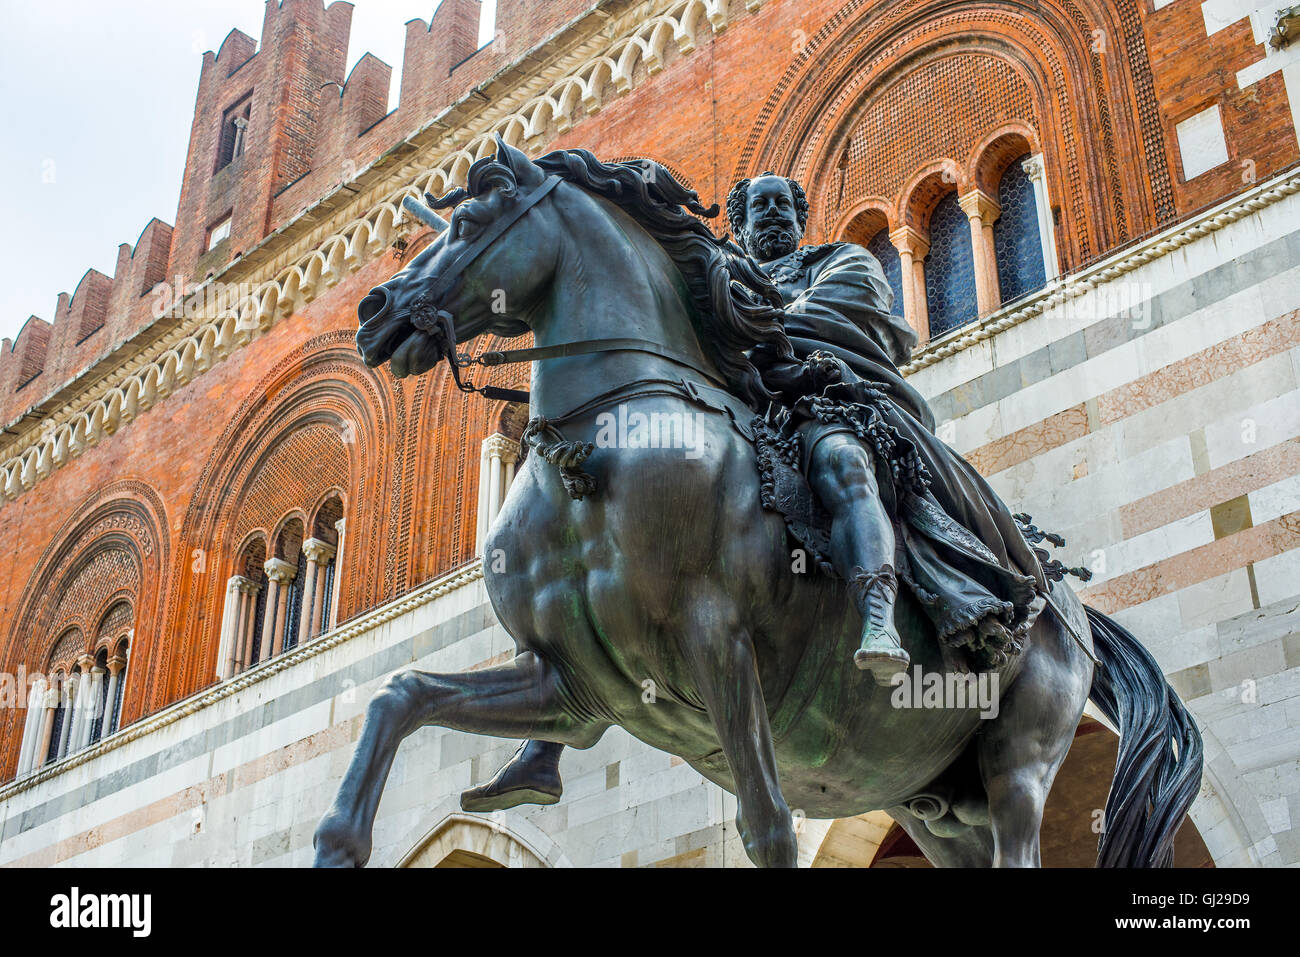 Palazzo Gotico and the equestrian statue of Ranuccio Farnese in Piazza Cavalli of Piacenza. Emilia-Romagna. Italy. Stock Photo